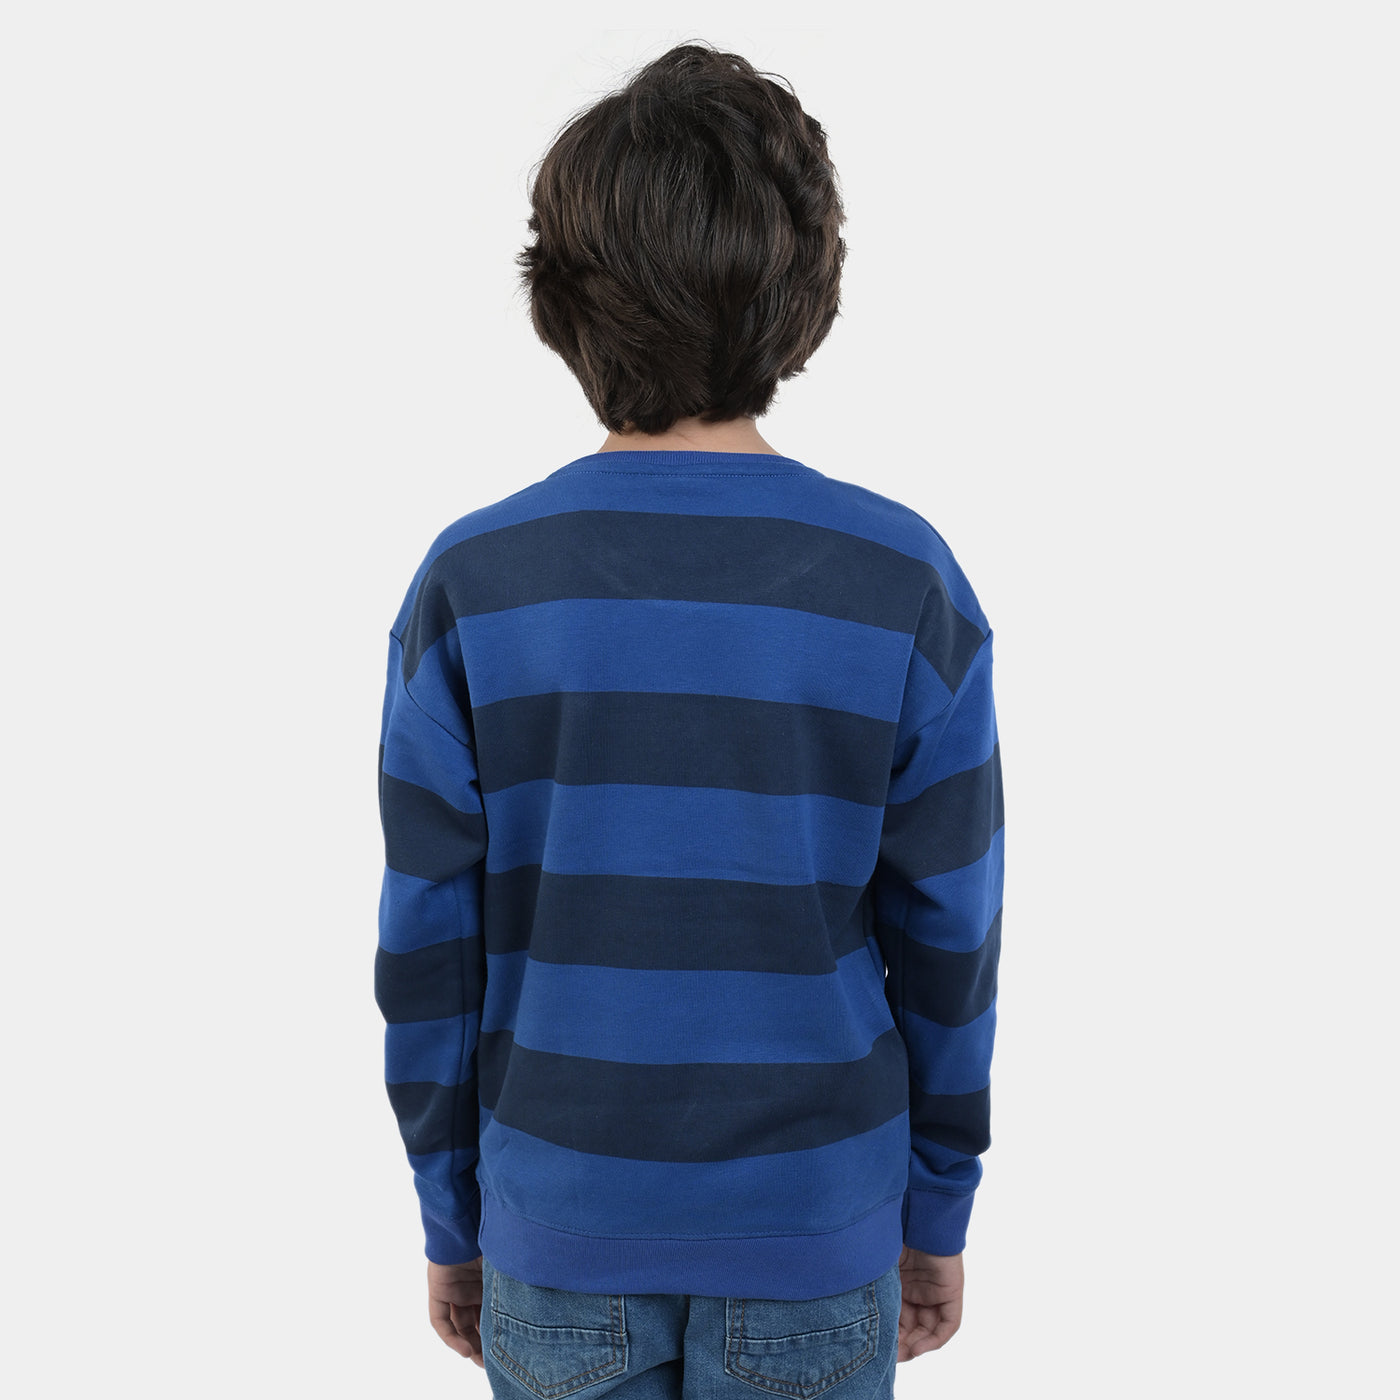 Boys Fleece Sweatshirt Hang On Mickey-Blue